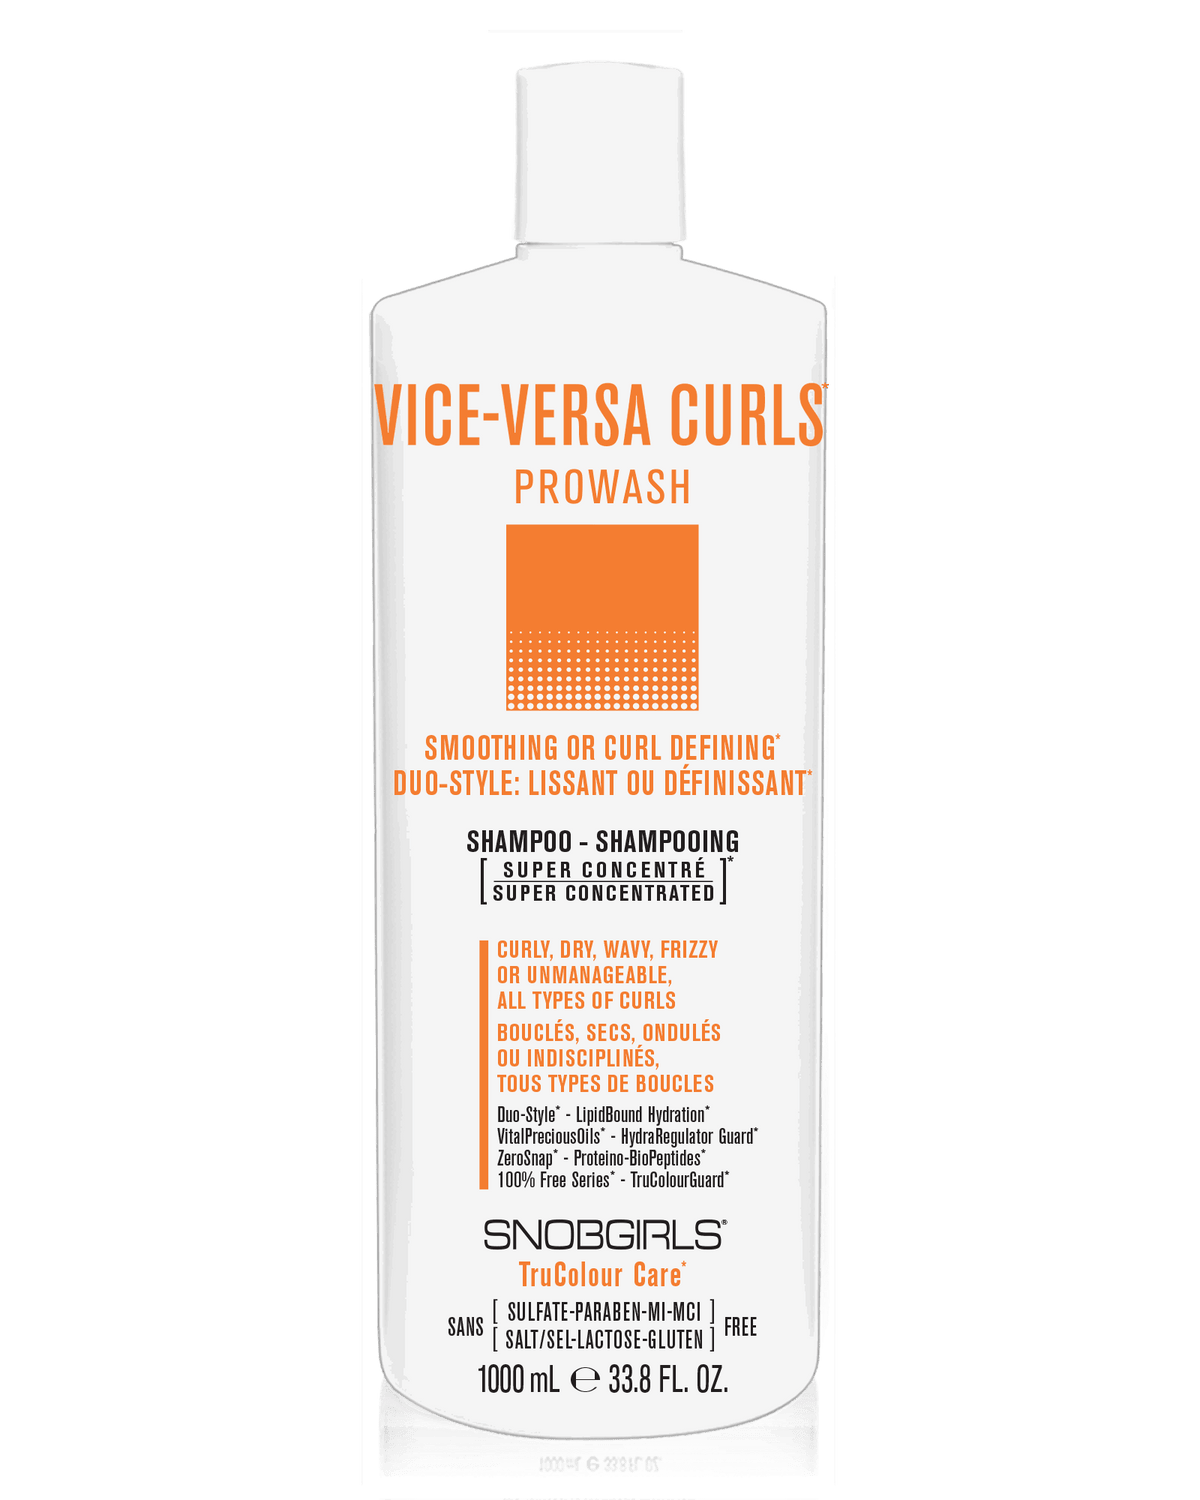 VICE-VERSA CURLS Prowash Vegan Hair ShampooVICE-VERSA CURLS Prowash Vegan Hair ShampooSNOBGIRLS.com